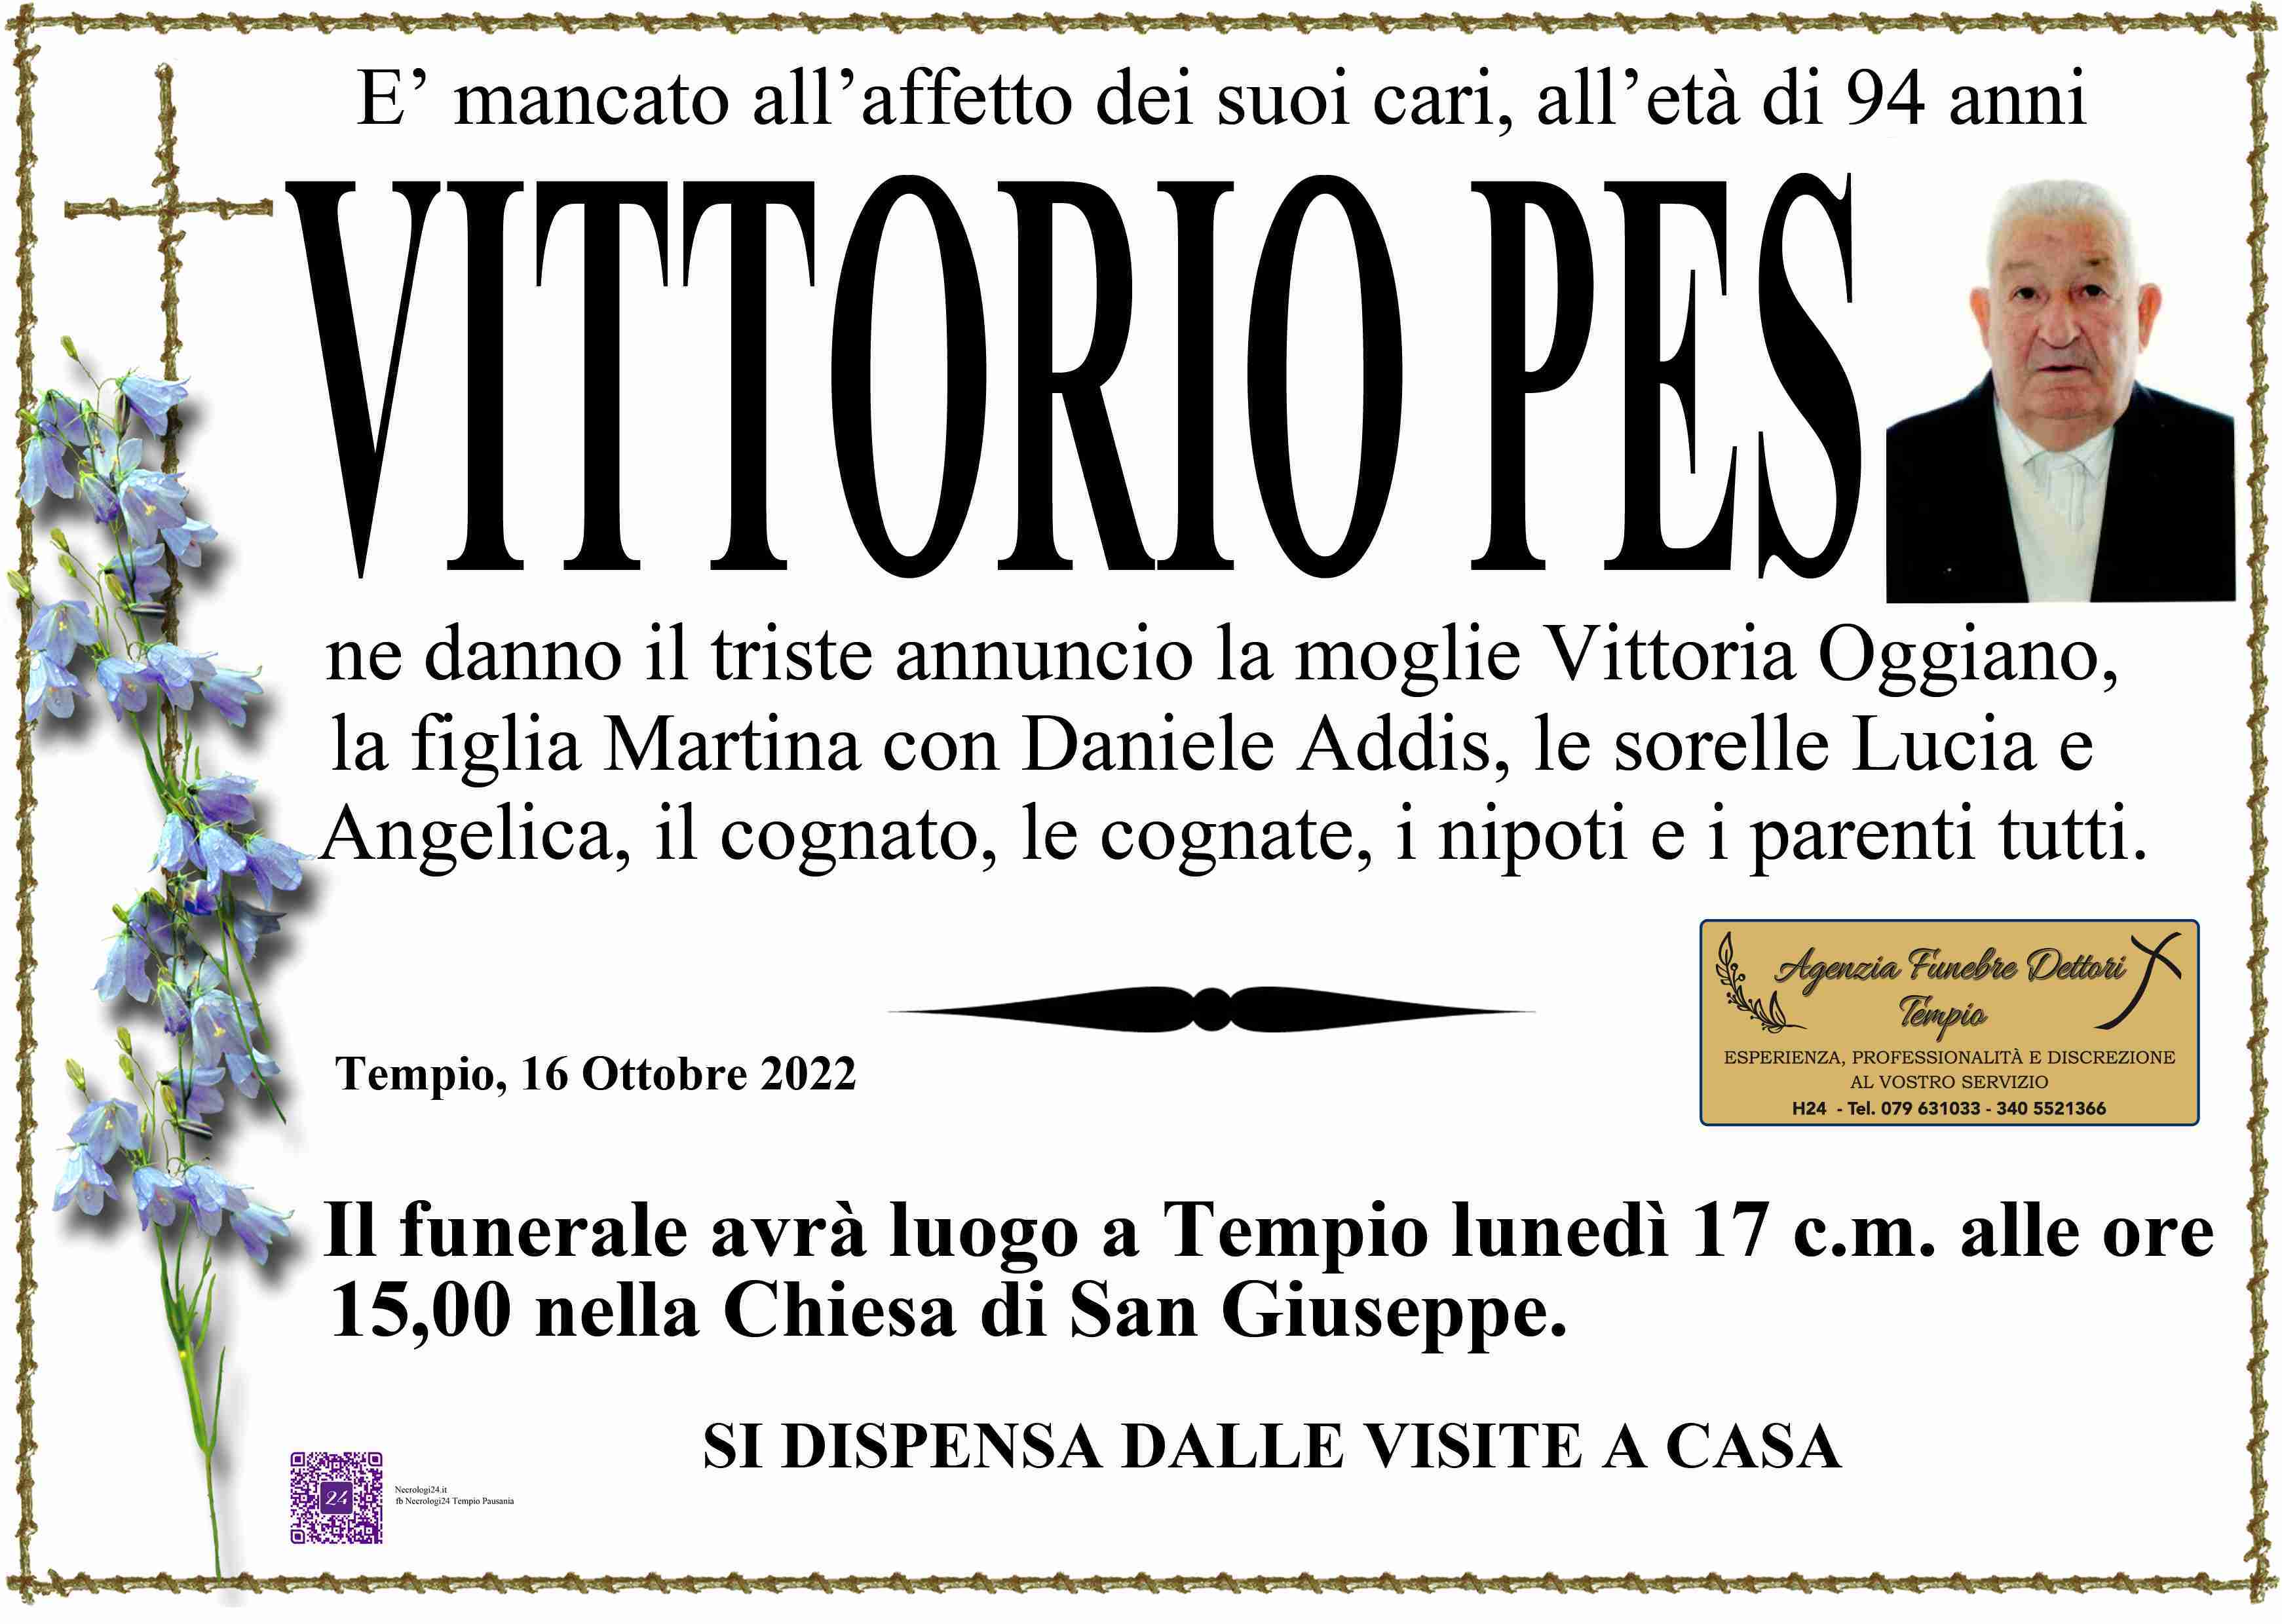 Vittorio Pes